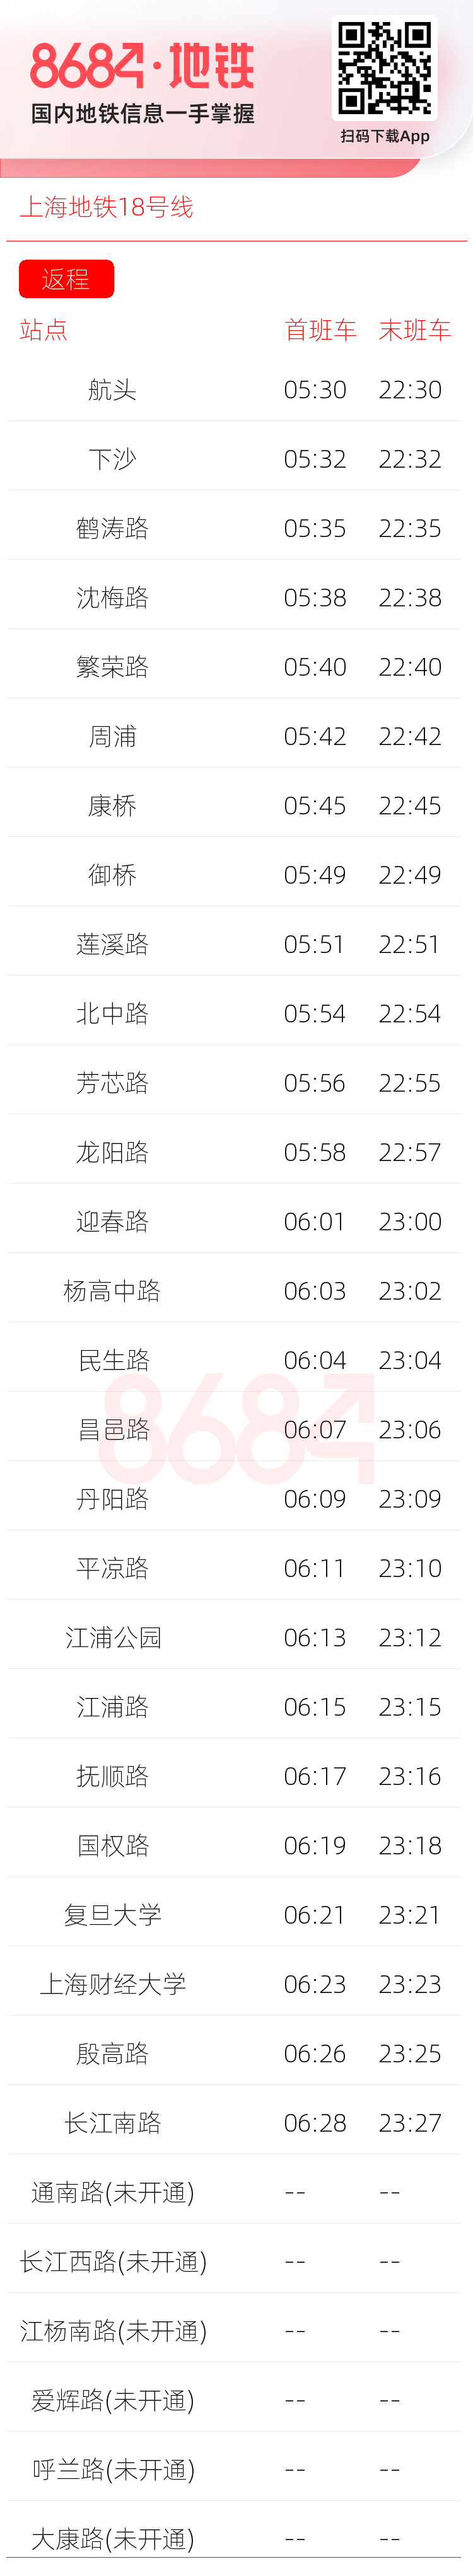 上海地铁18号线运营时间表